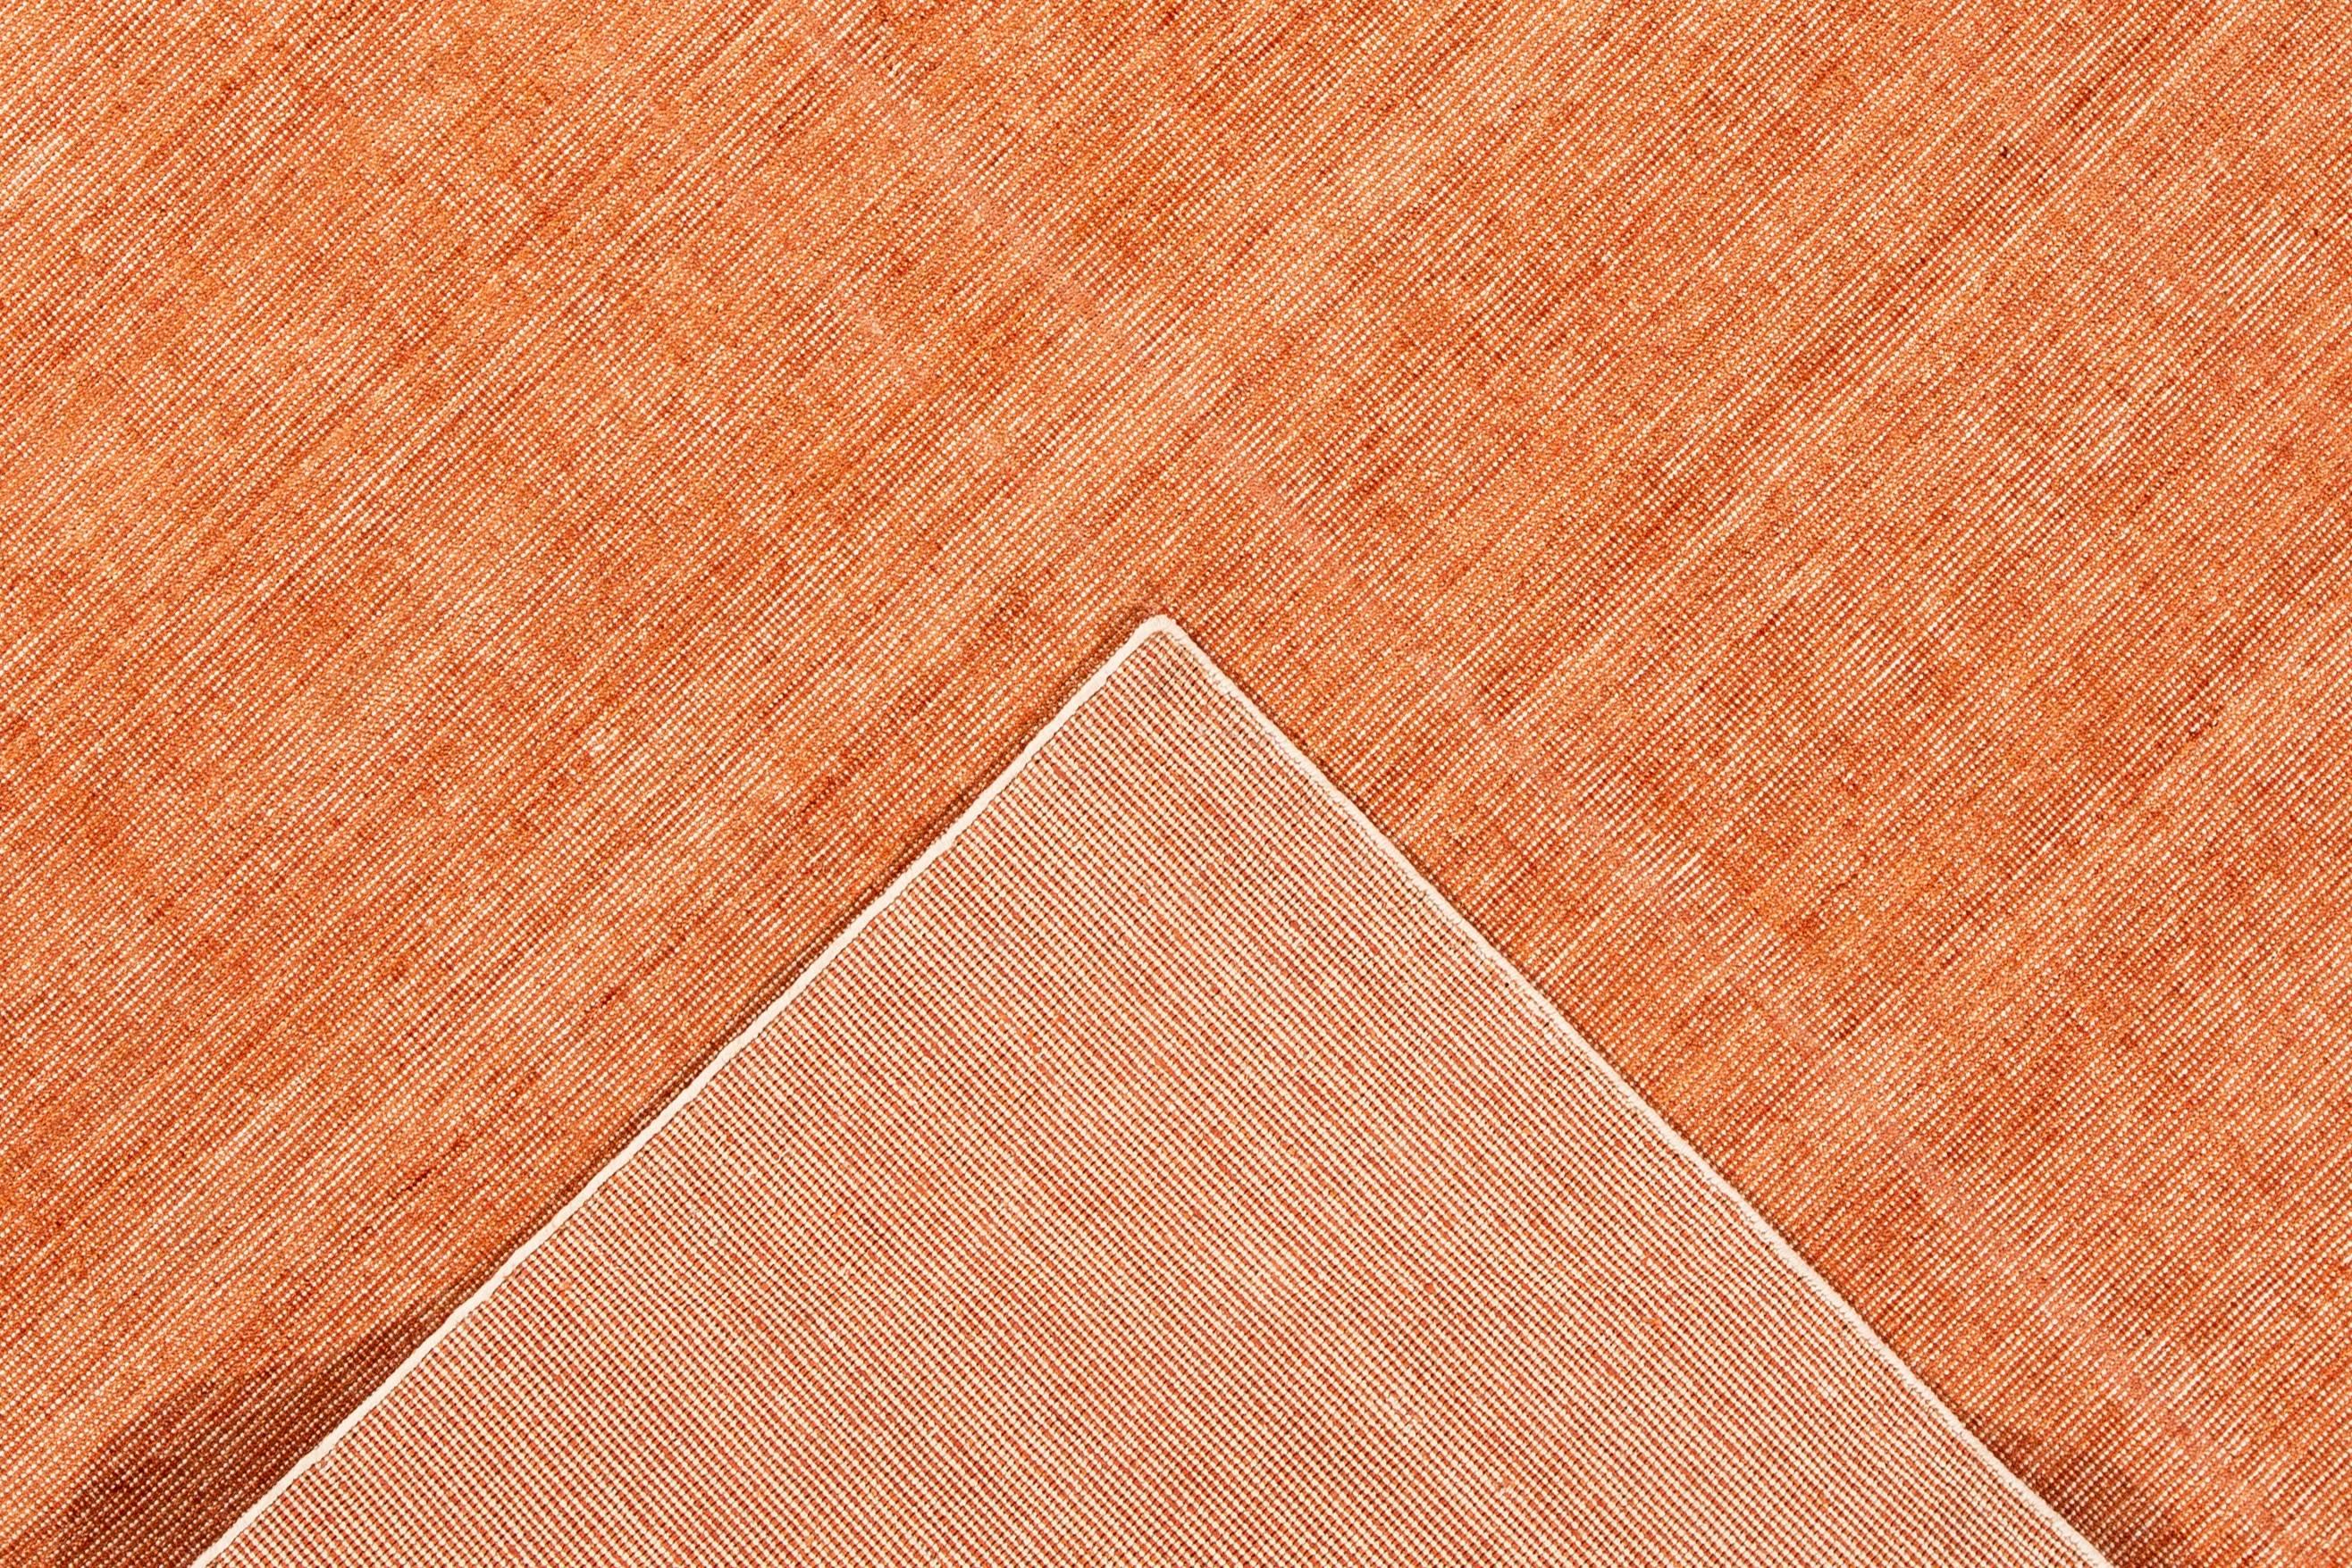 Wunderschöner, moderner, handgefertigter indischer Boho-Teppich aus Bambus und Seide mit einem Feld in Orange und Elfenbein. Dieser Teppich aus der Boho-Kollektion hat ein durchgehendes unifarbenes Muster.

Dieser Teppich misst: 9'0